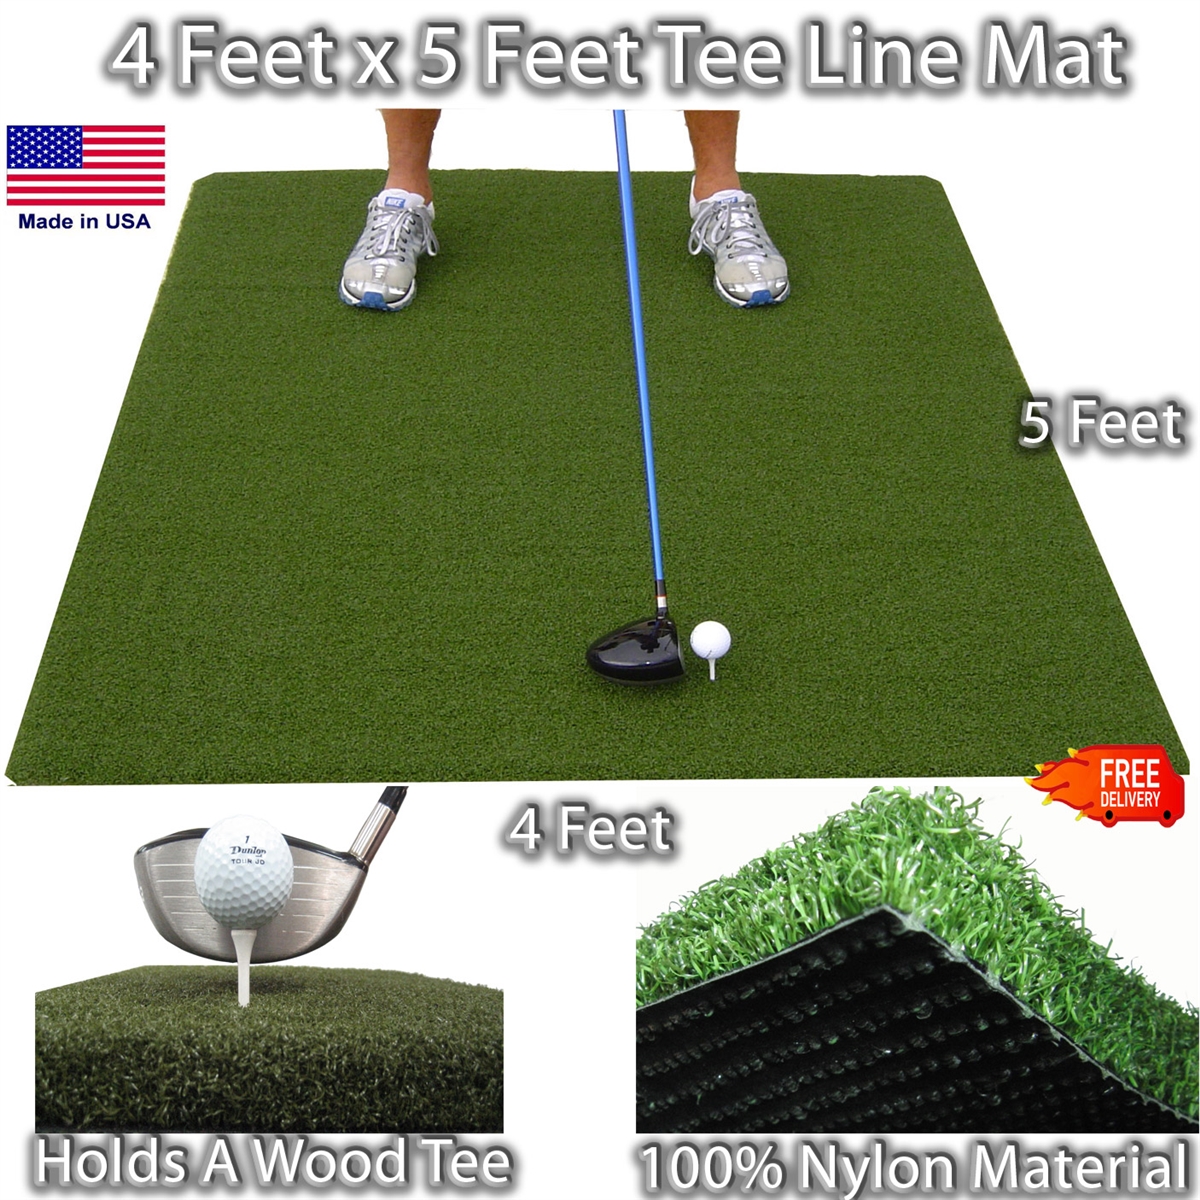 4 Feet x 5 Feet Matzilla Wood Tee Golf Mat